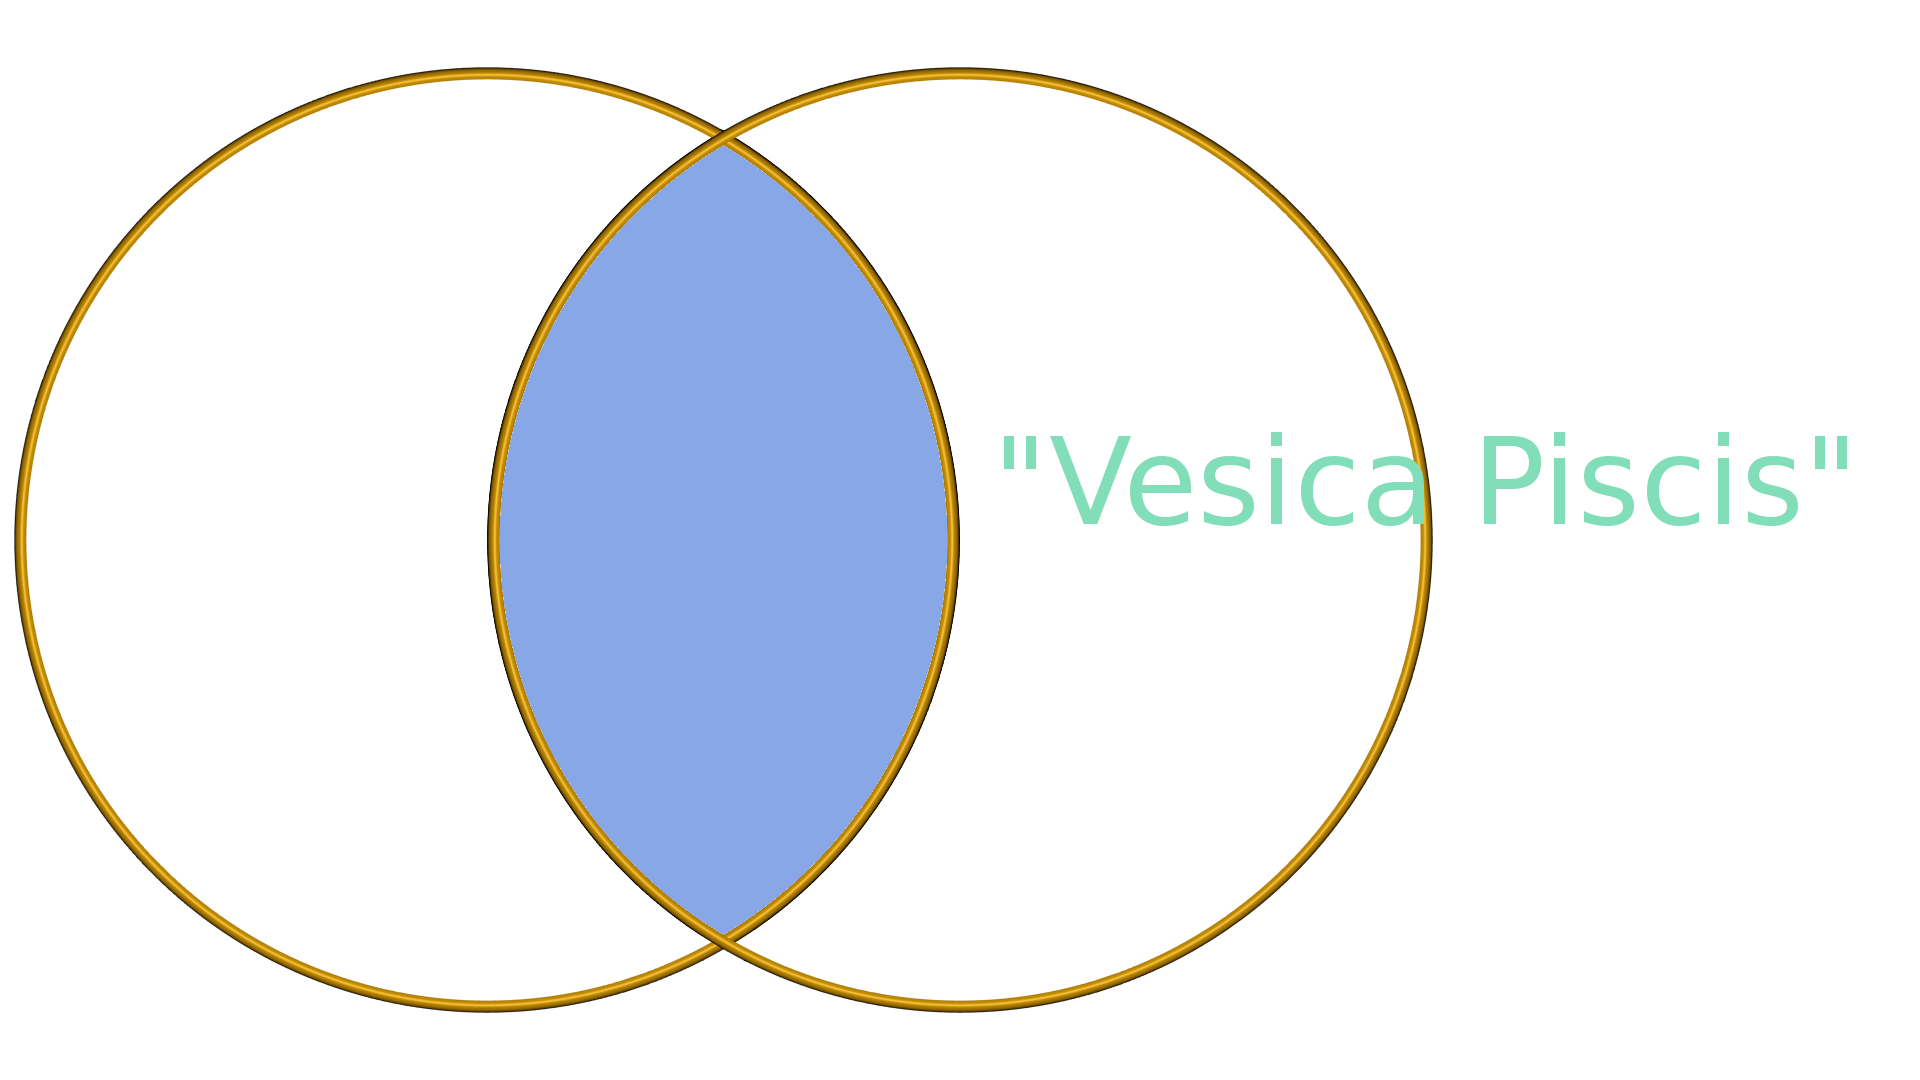 Der goldene Schnitt und die Visica Piscis